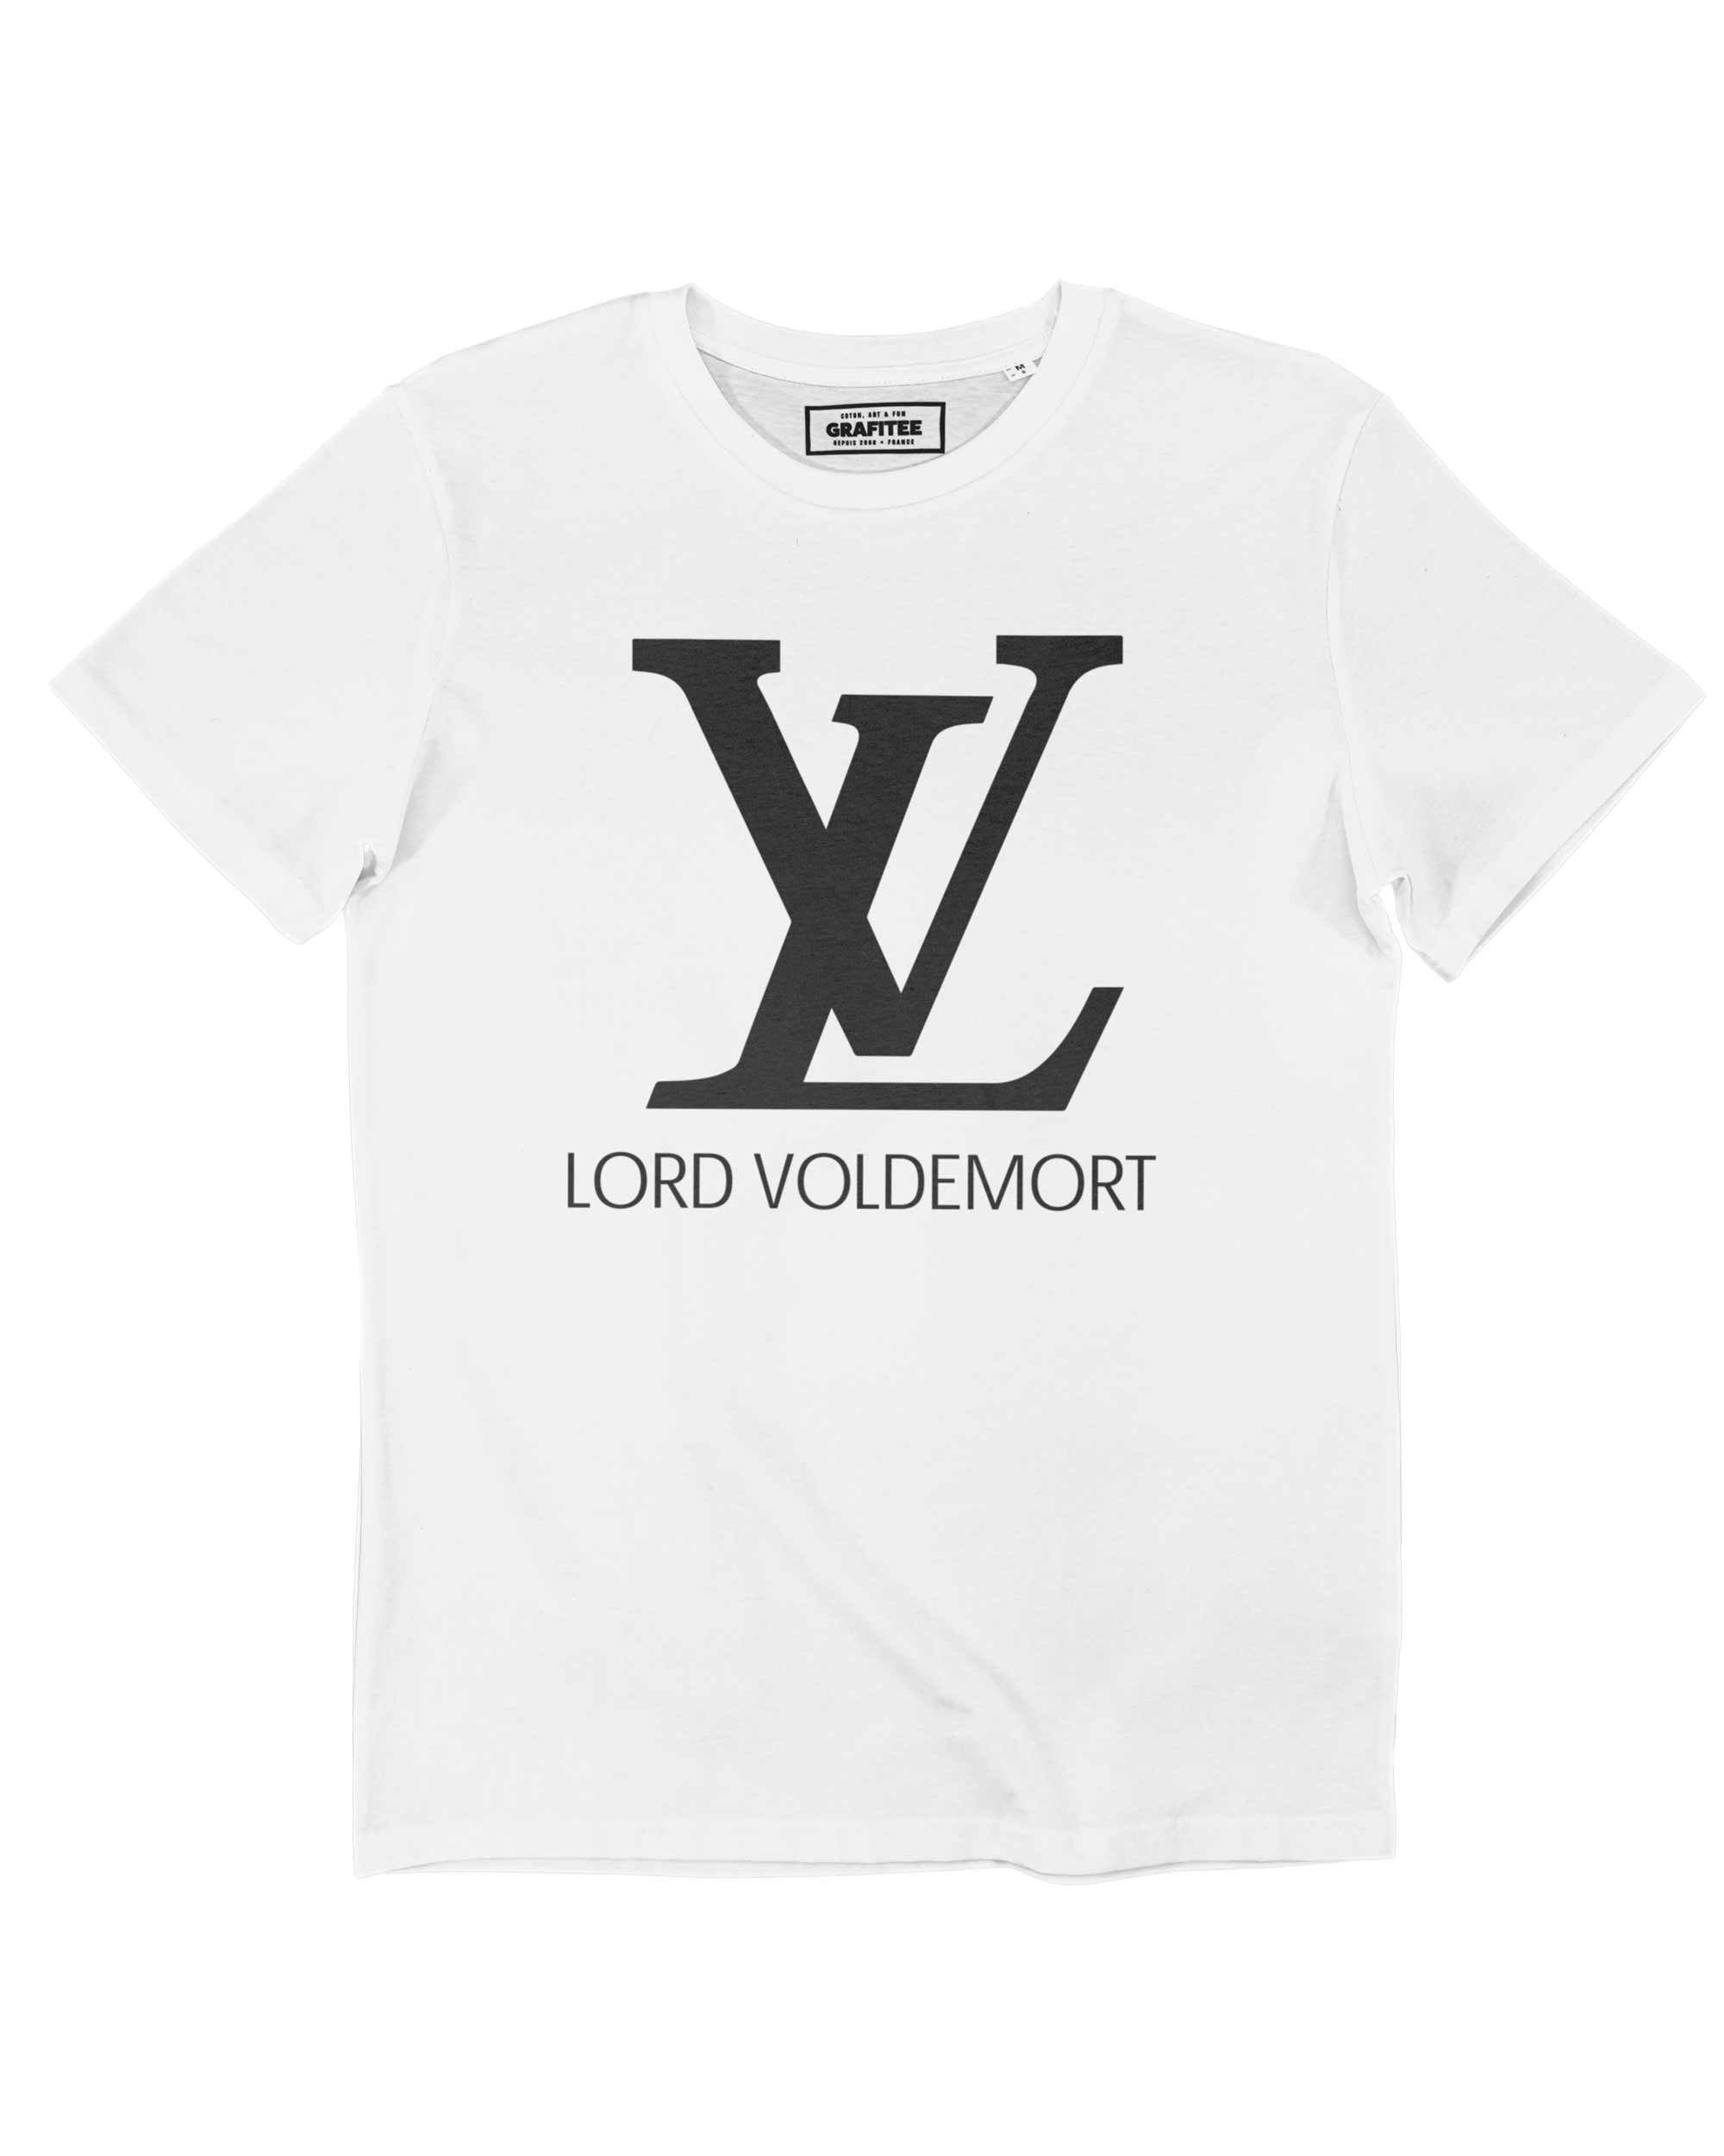 T-shirt Lord Voldemort Grafitee